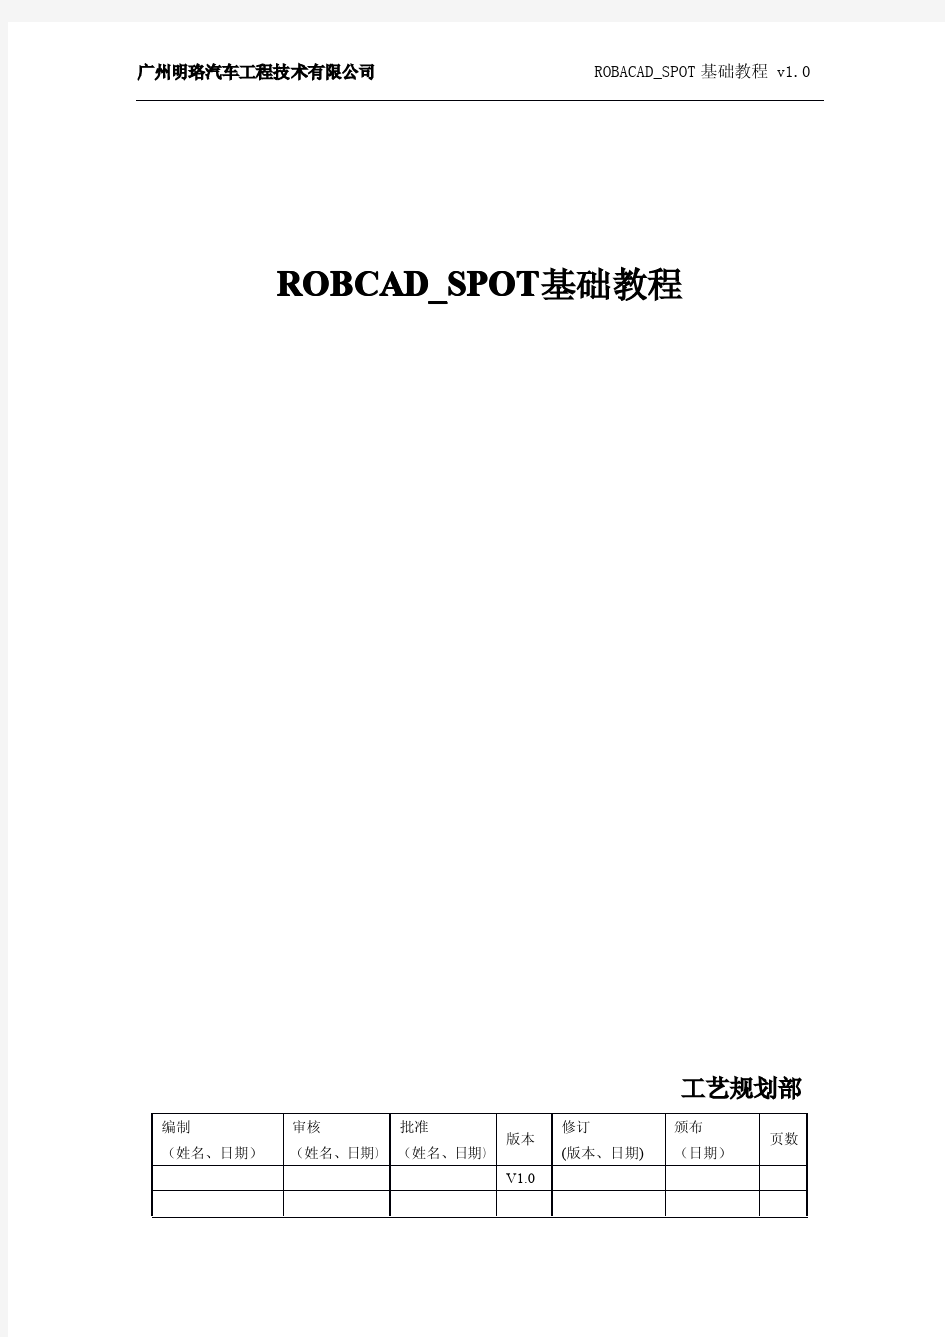 Robcad_基础教程工艺部内部文件